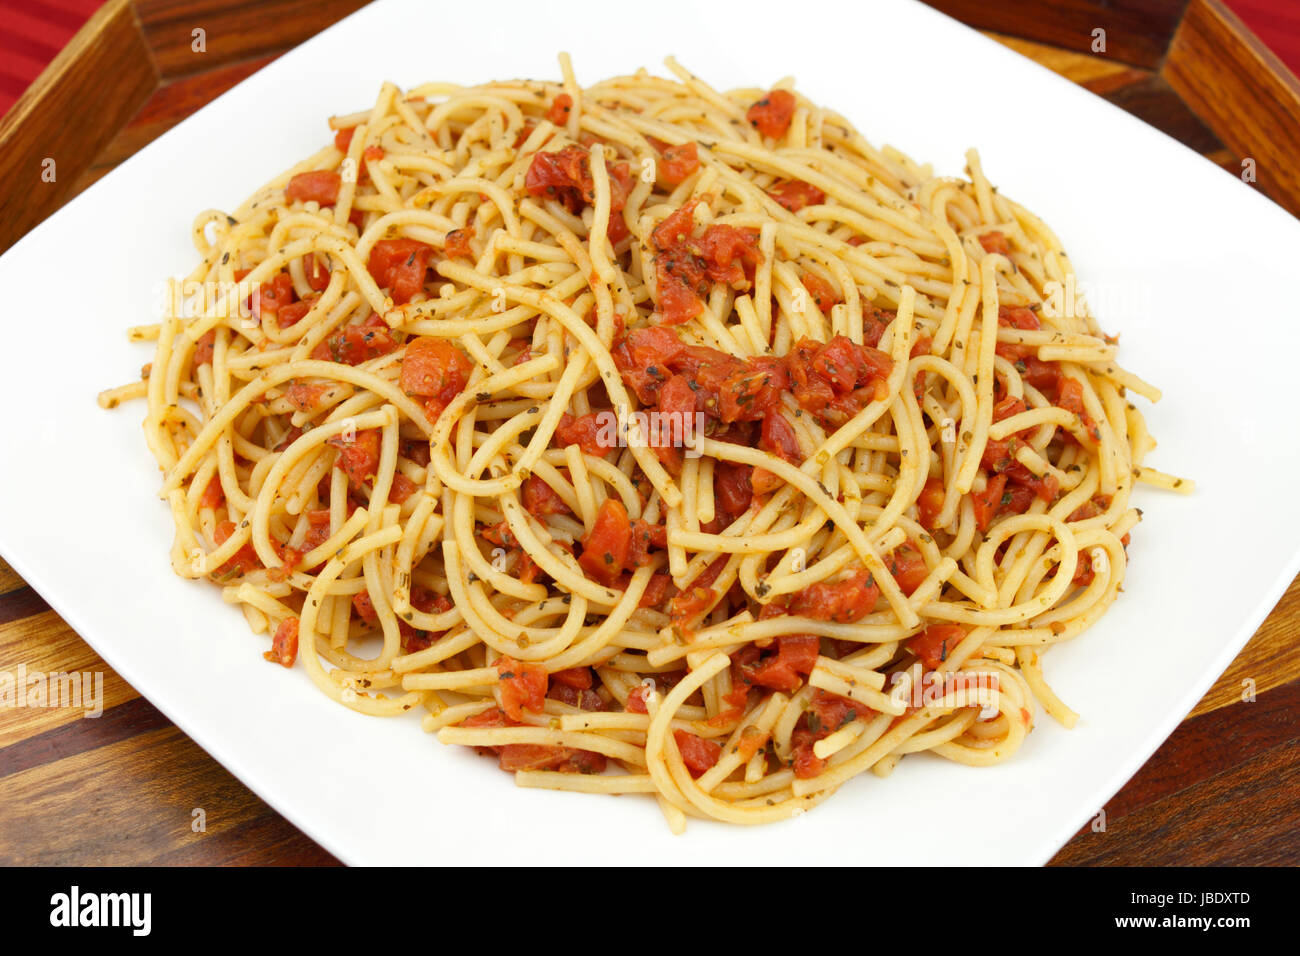 La deliziosa cena cercando di perfettamente cotti gli spaghetti noodles miscelato con organici a dadini i pomodori e le erbe serviti su una piastra bianca con belle in legno intarsiato che serve il vassoio su una tovaglia rosso. Foto Stock